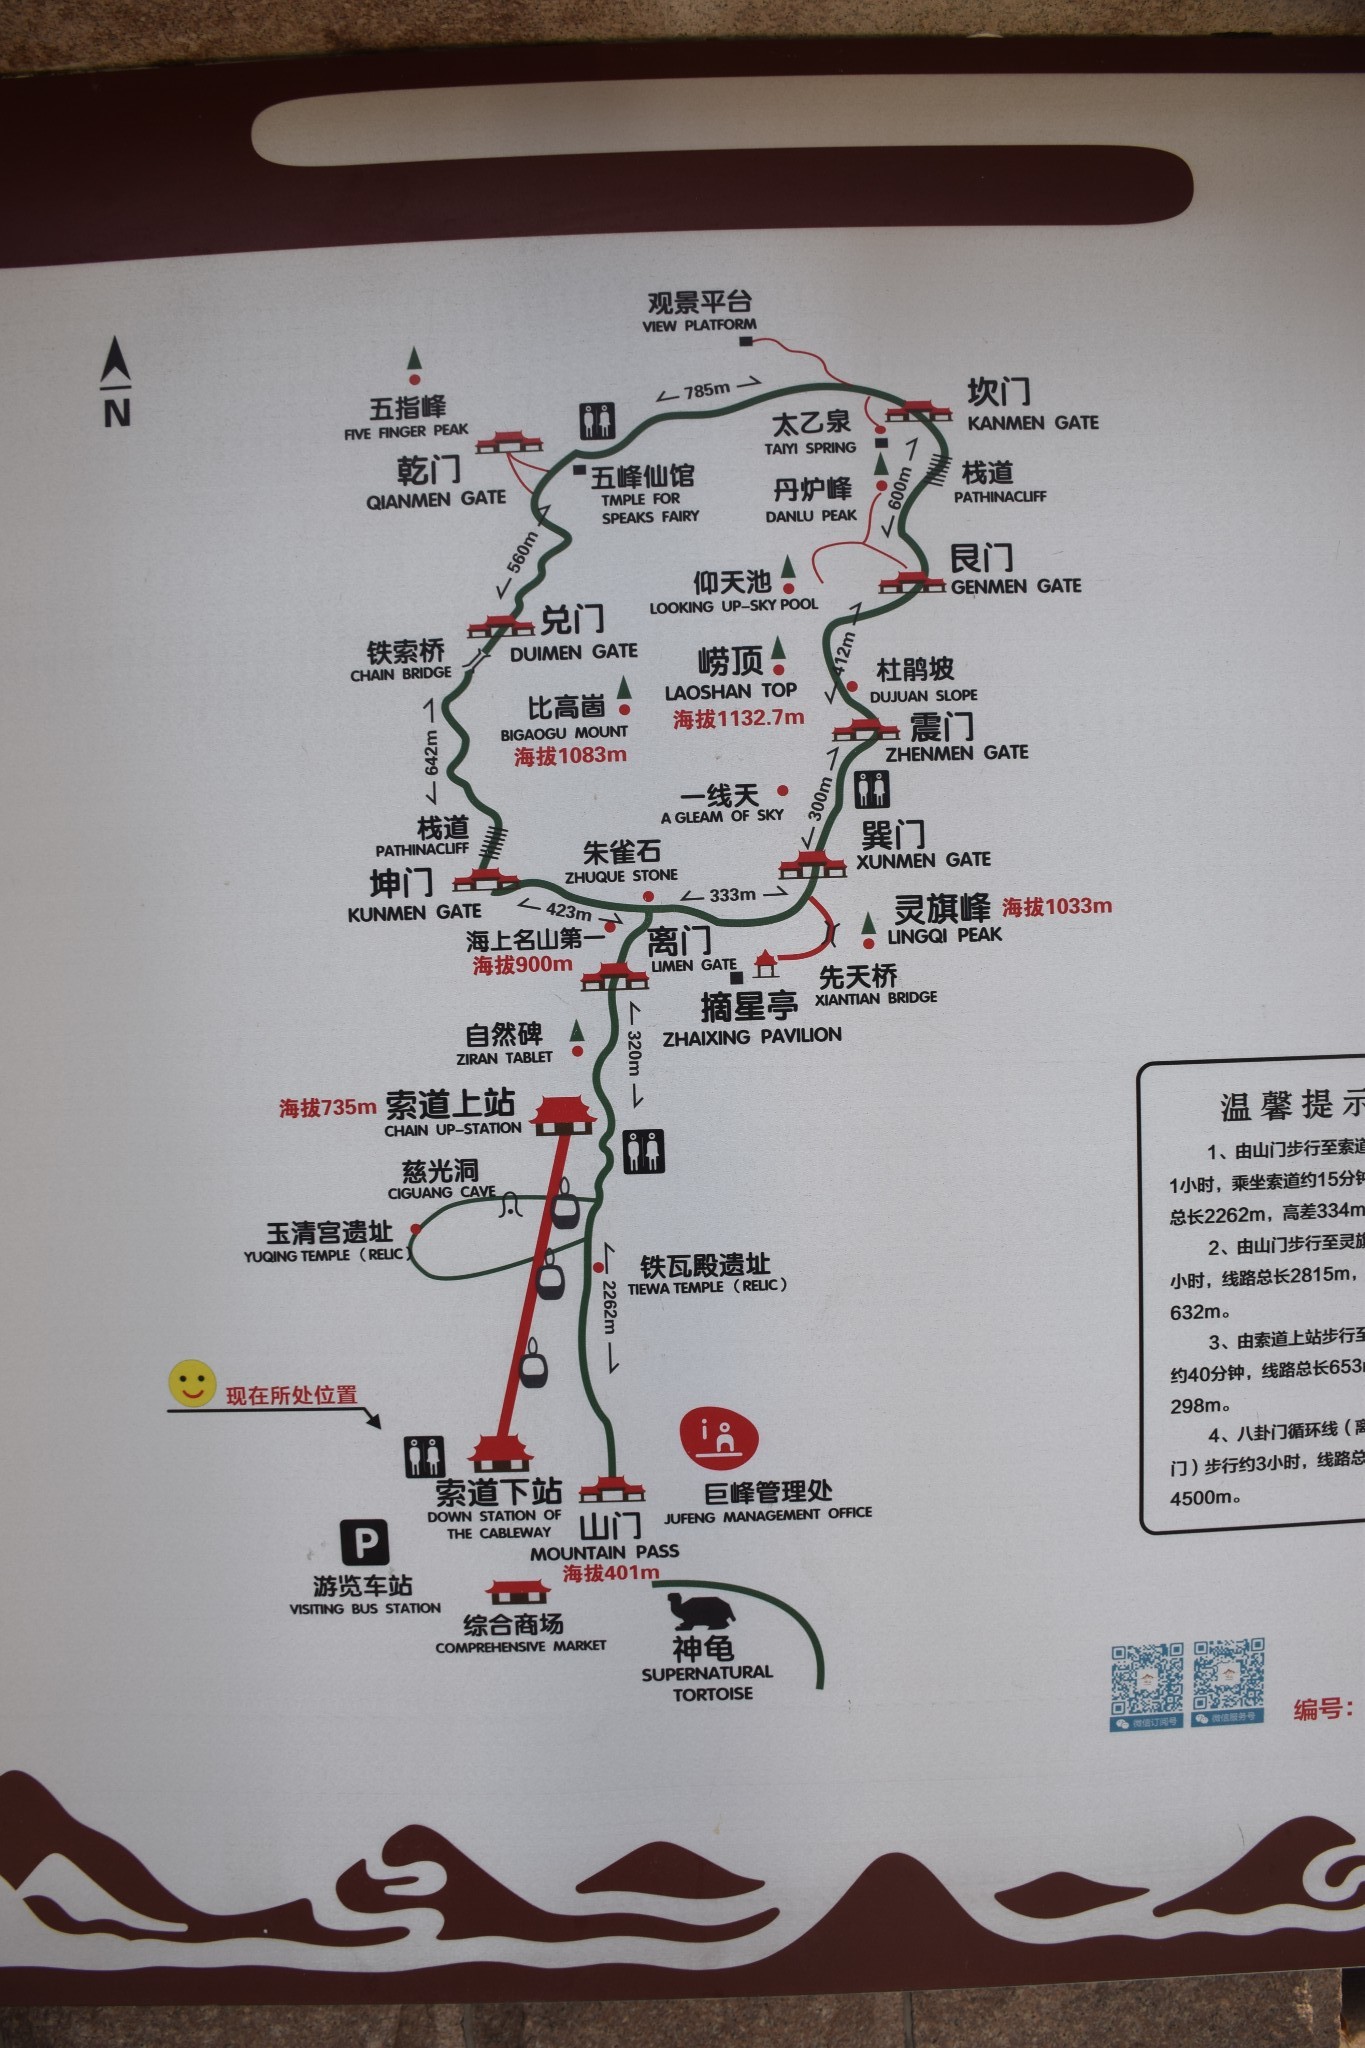 青岛崂山极顶—巨峰登顶一日游攻略路线指南